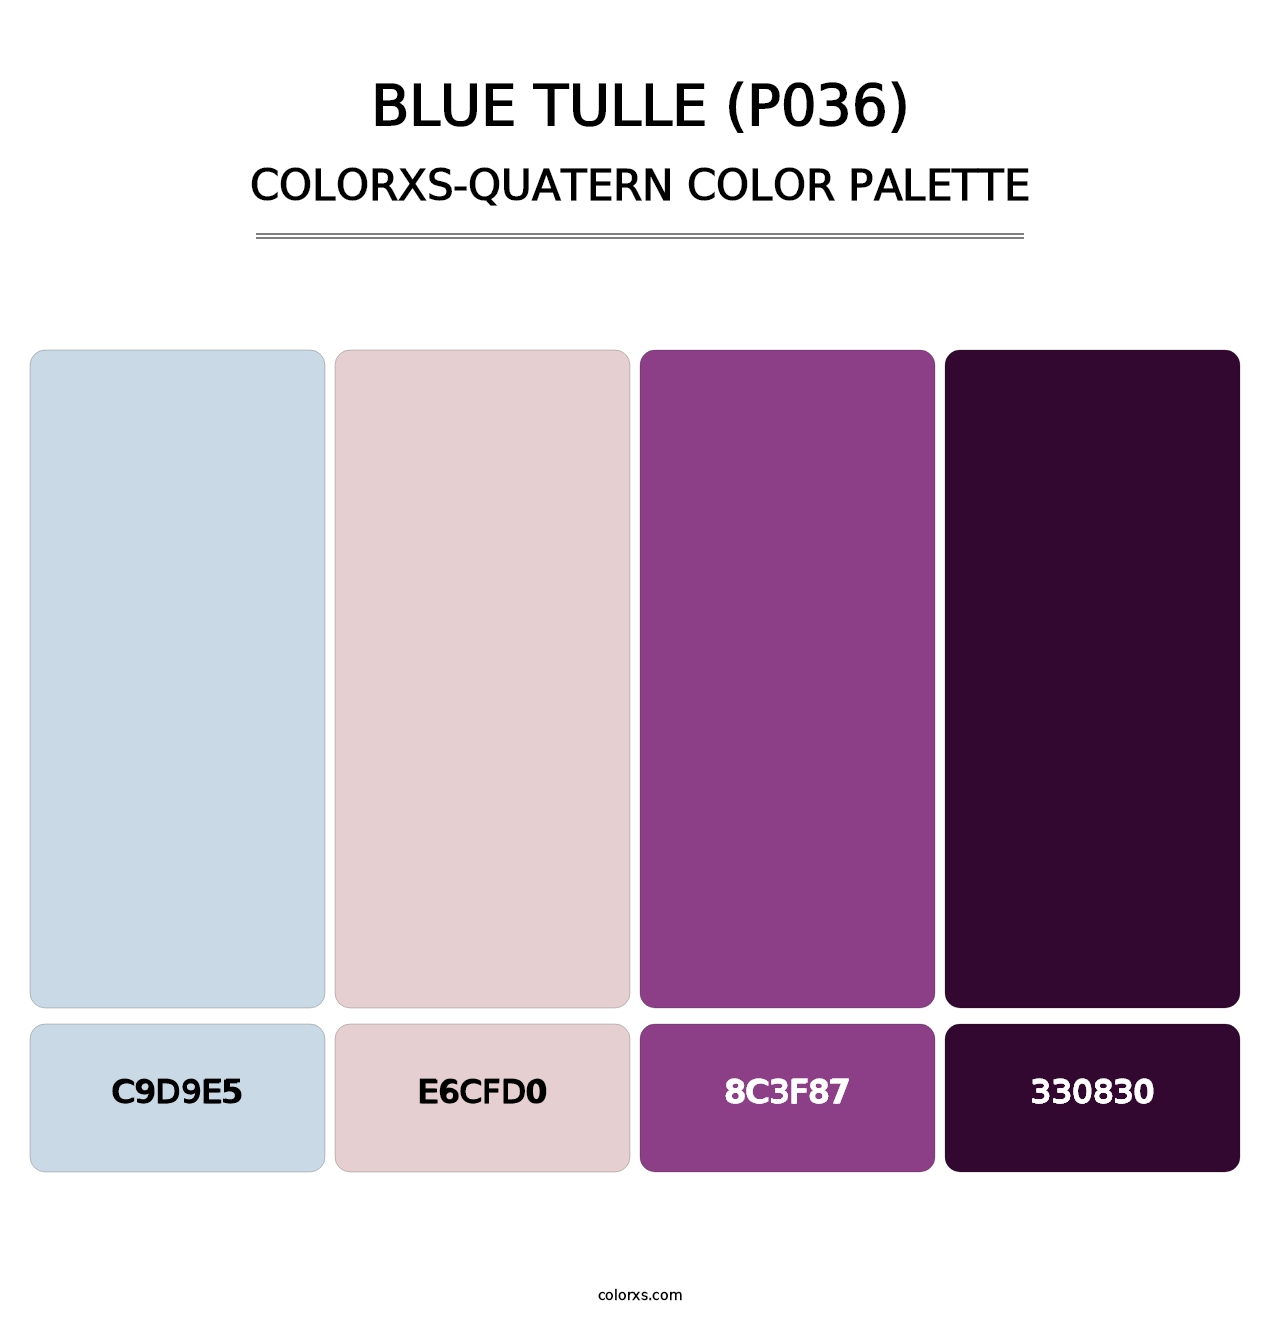 Blue Tulle (P036) - Colorxs Quatern Palette